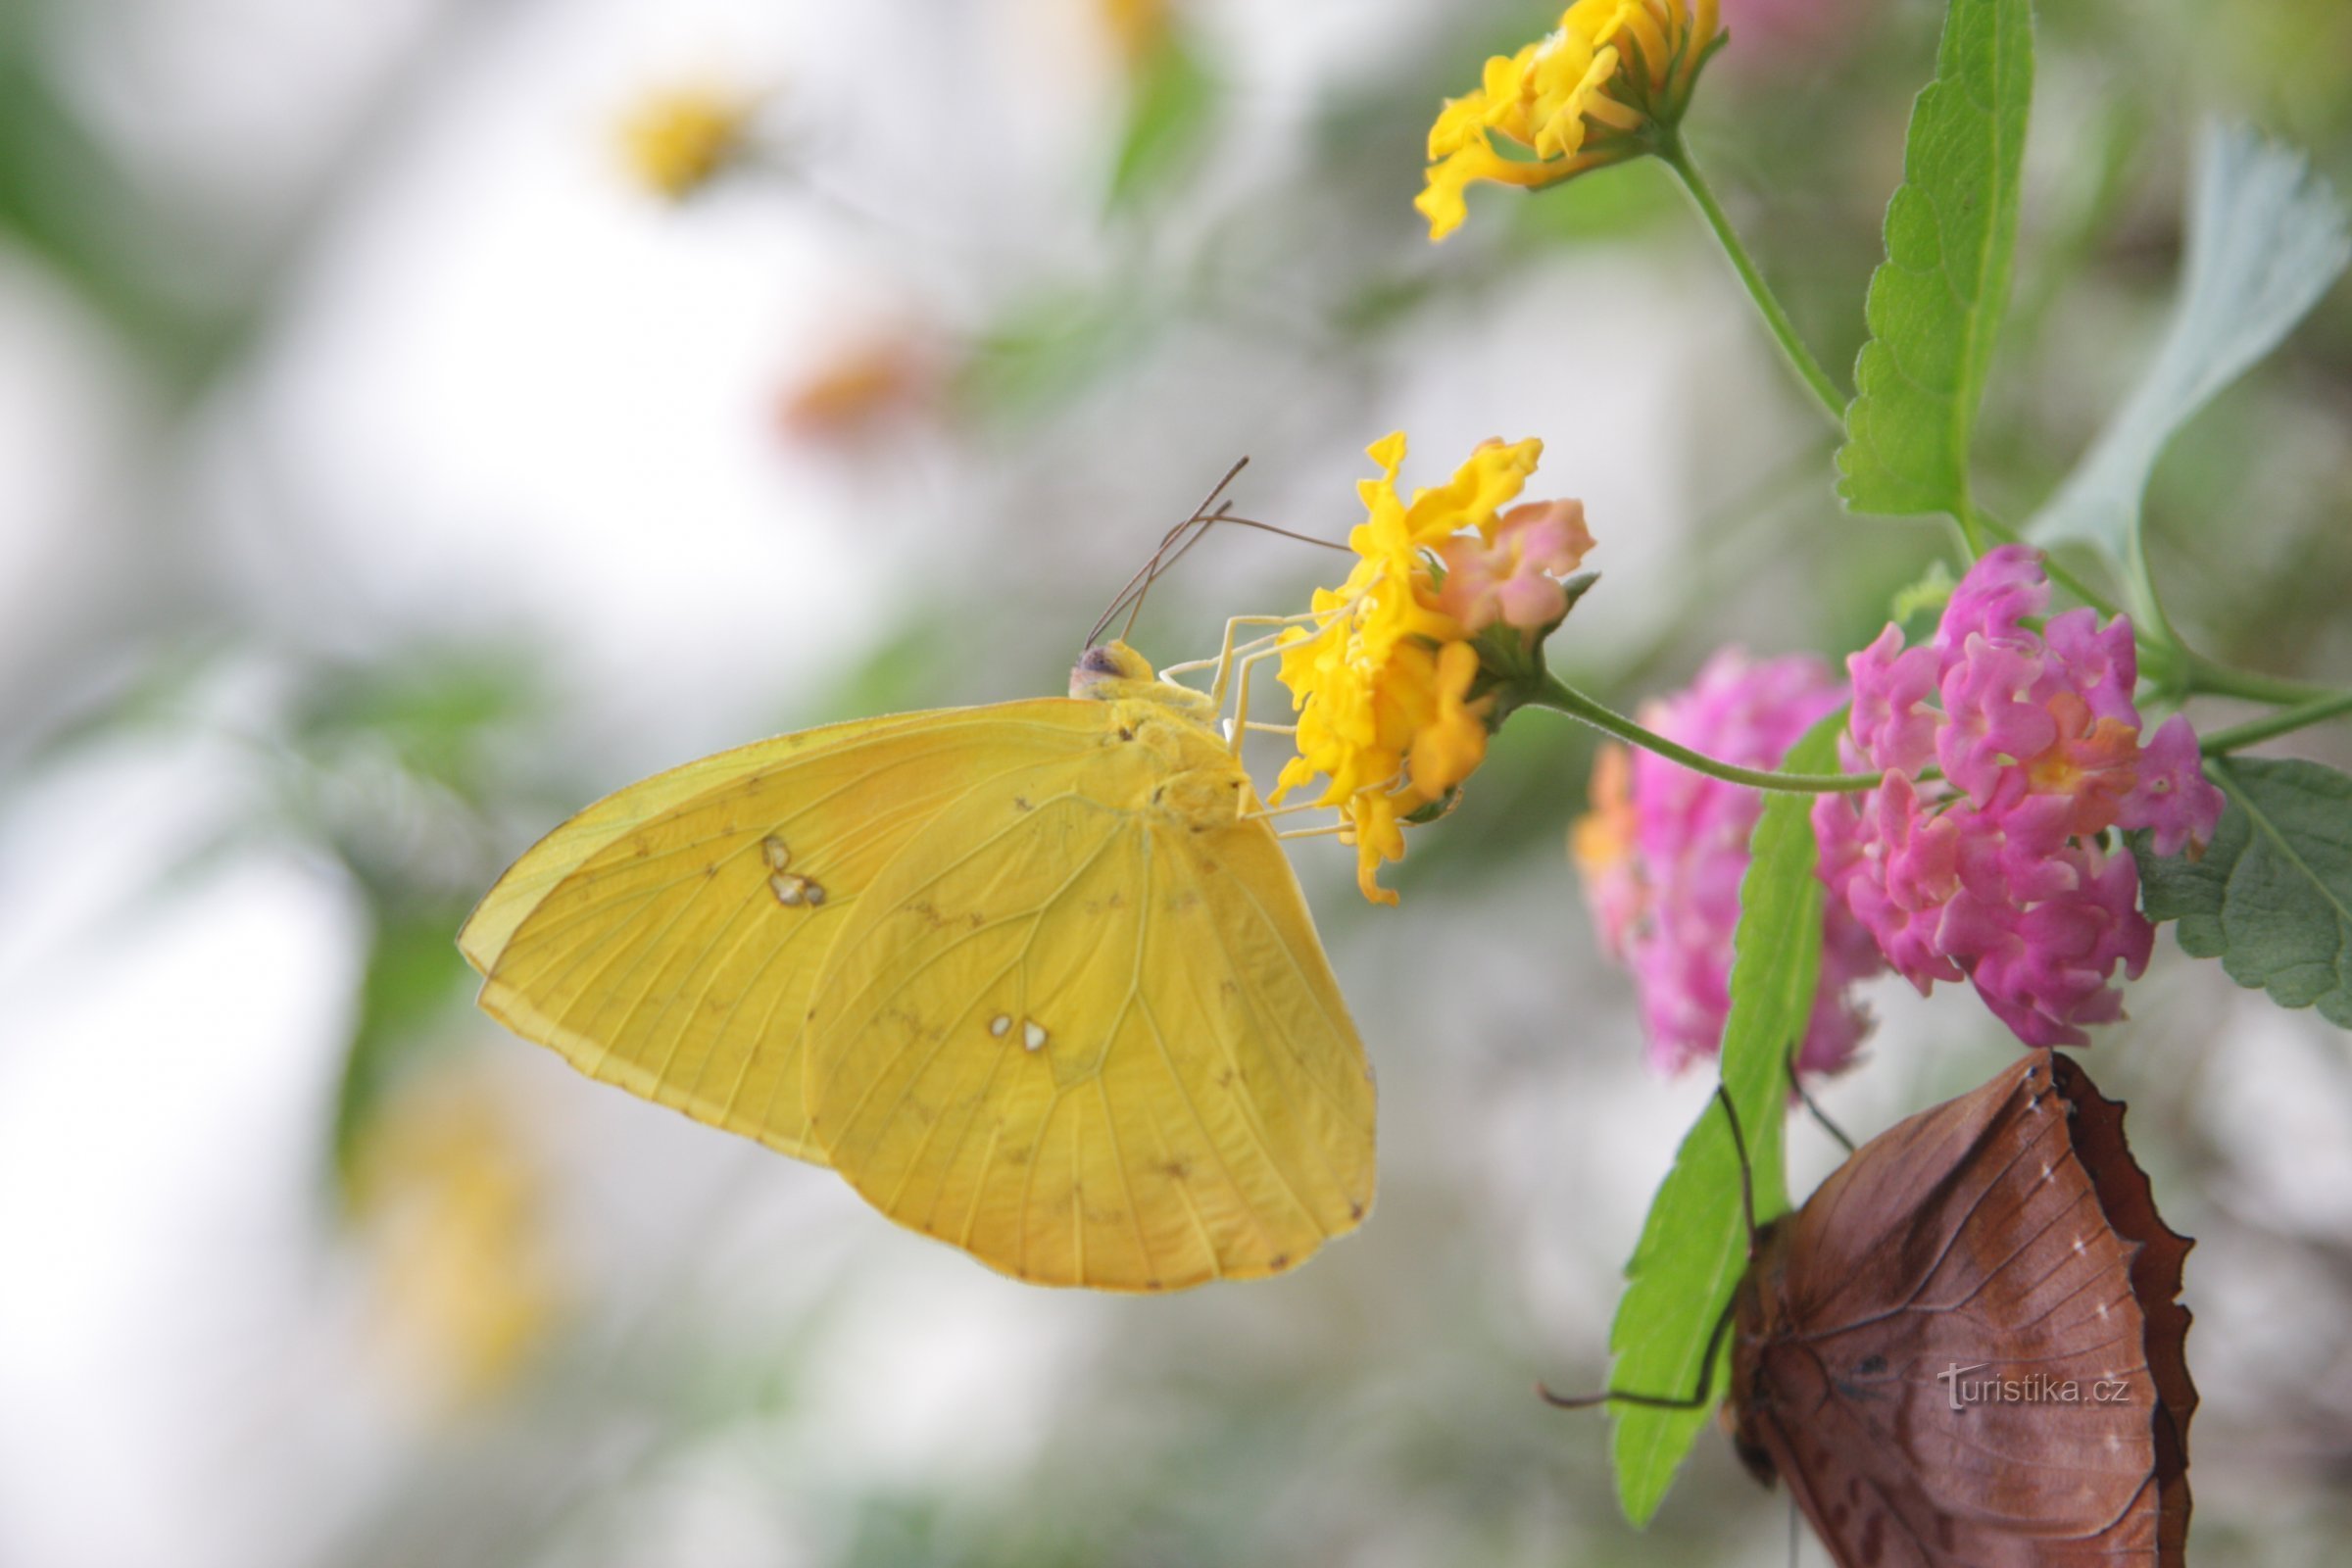 La vie mystérieuse des papillons sera présentée par une exposition dans la serre Fata Morgana